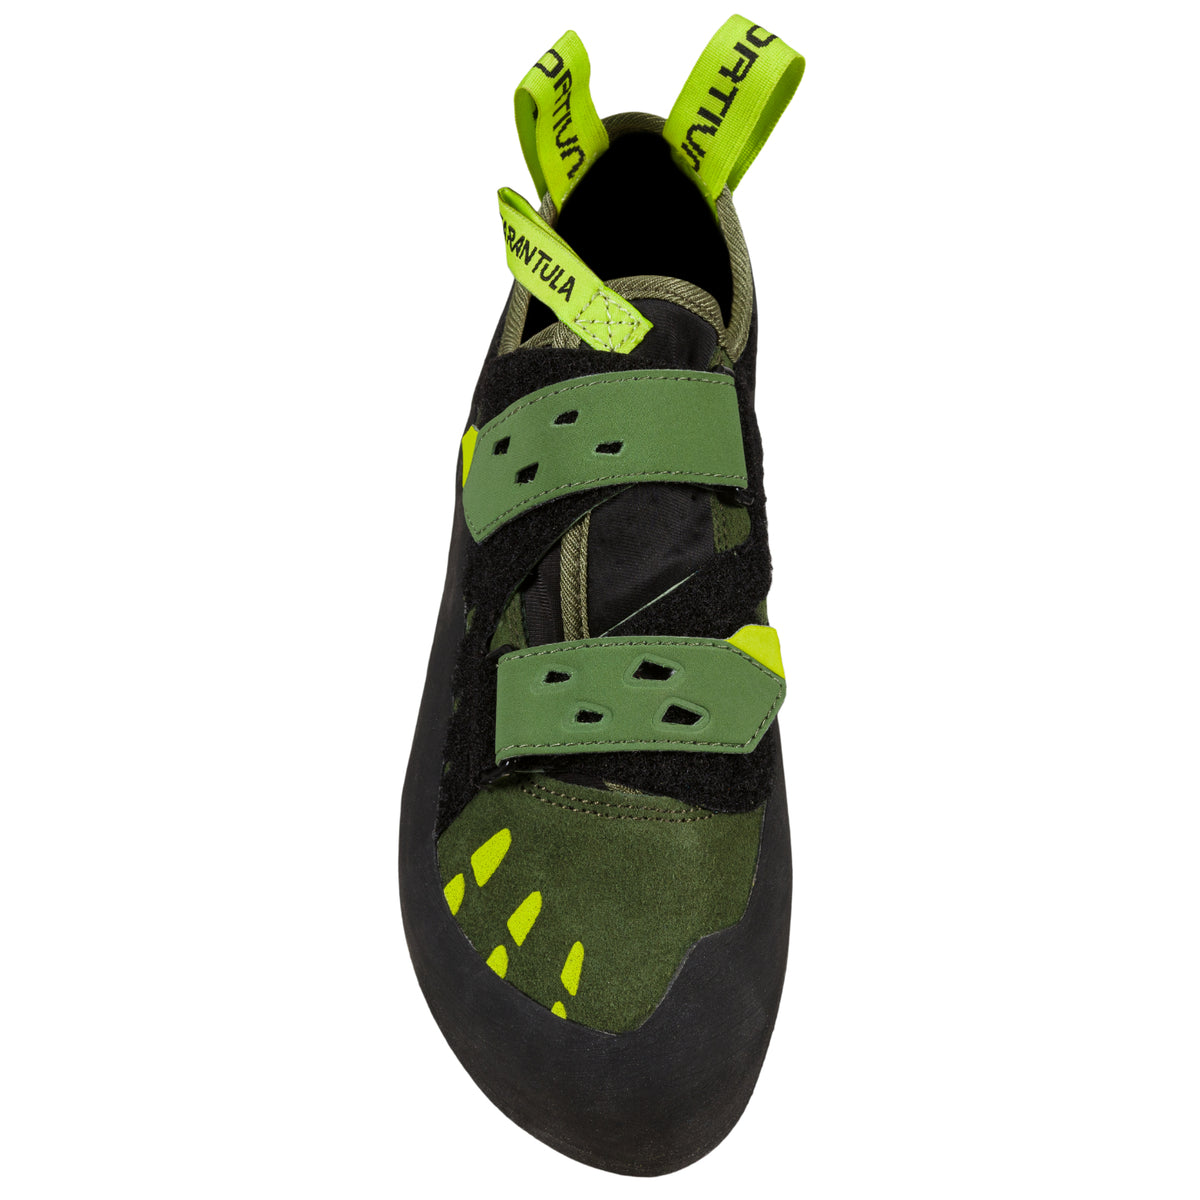 La Sportiva Tarantula in olive/neon colour showing toe and velcro straps